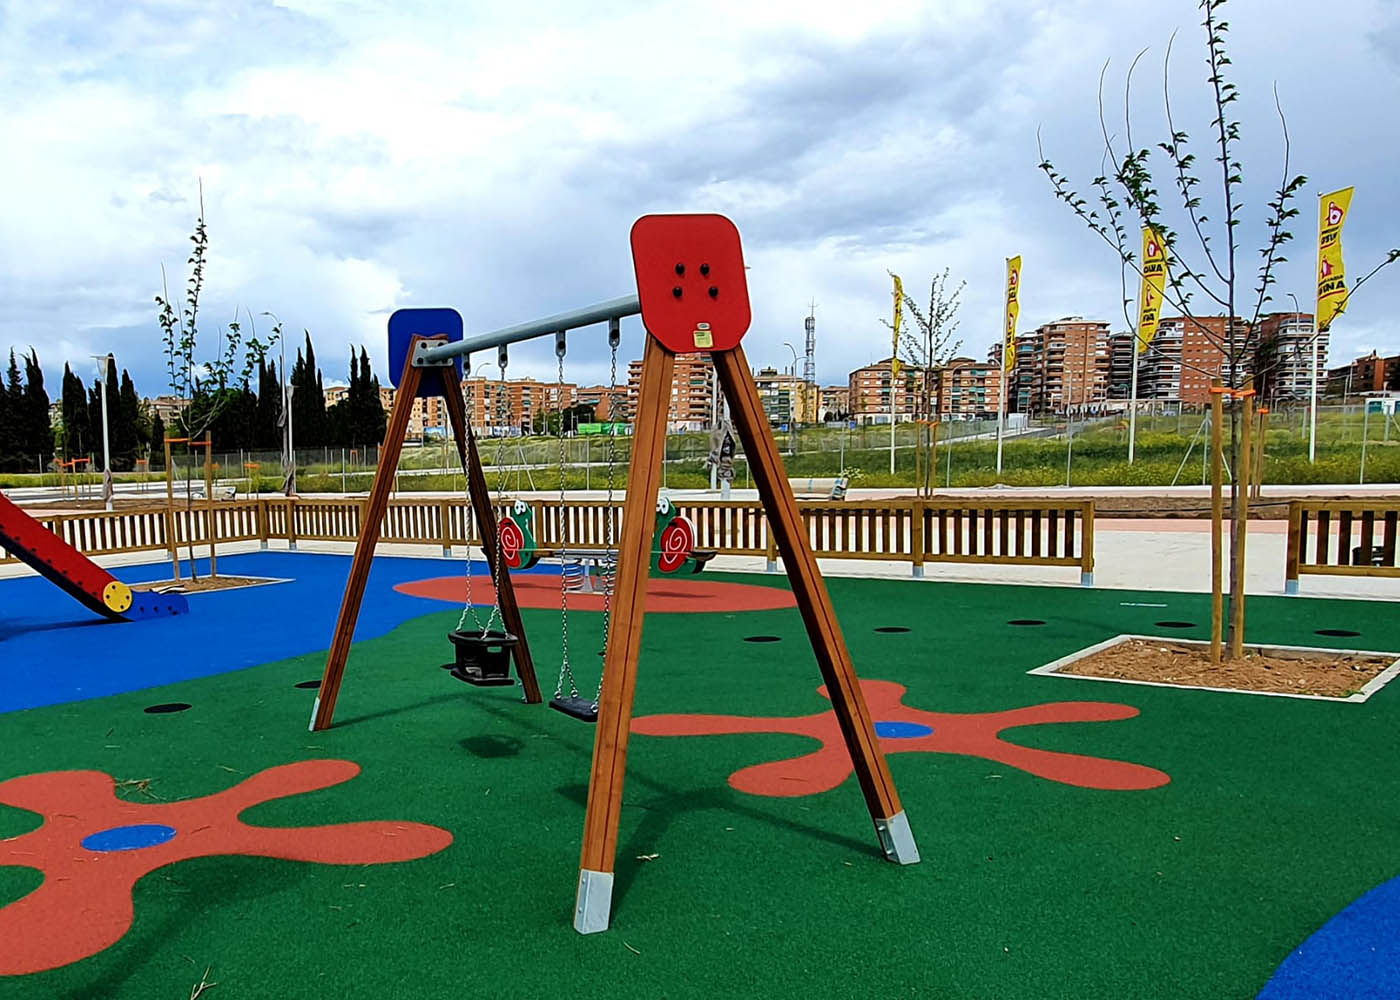 Diseño de vallas de madera tratada para parques infantiles — Santaulària  Equipamientos urbanos